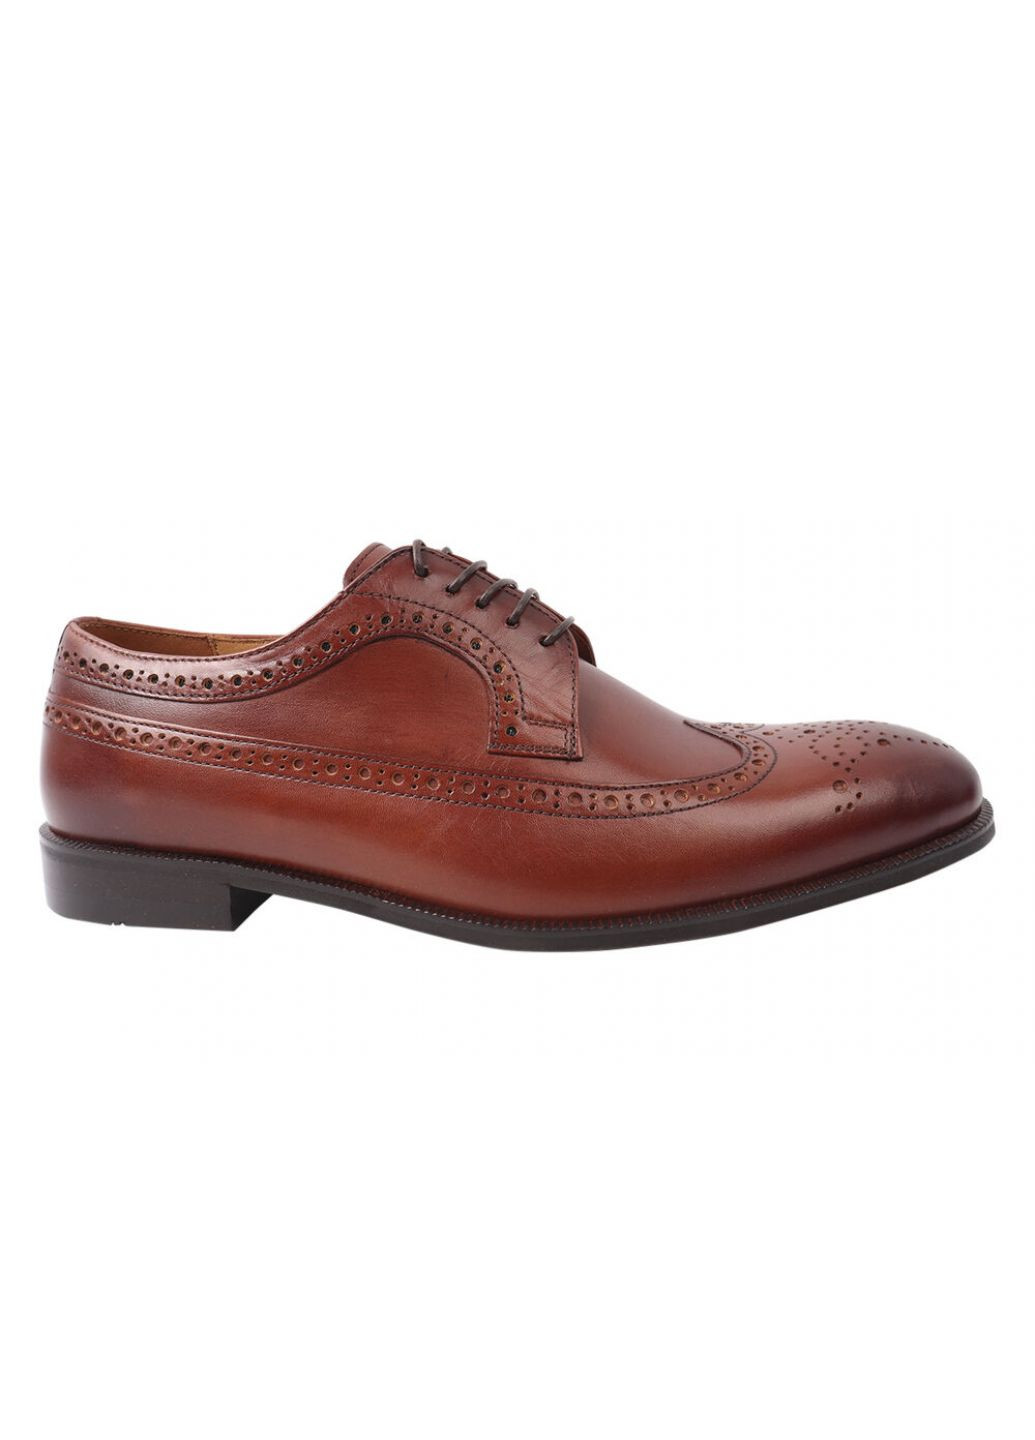 Туфлі чоловічі з натуральної шкіри, на шнурівці, на низькому ходу, коричневі, Conhpol 287-21dt (257419931)